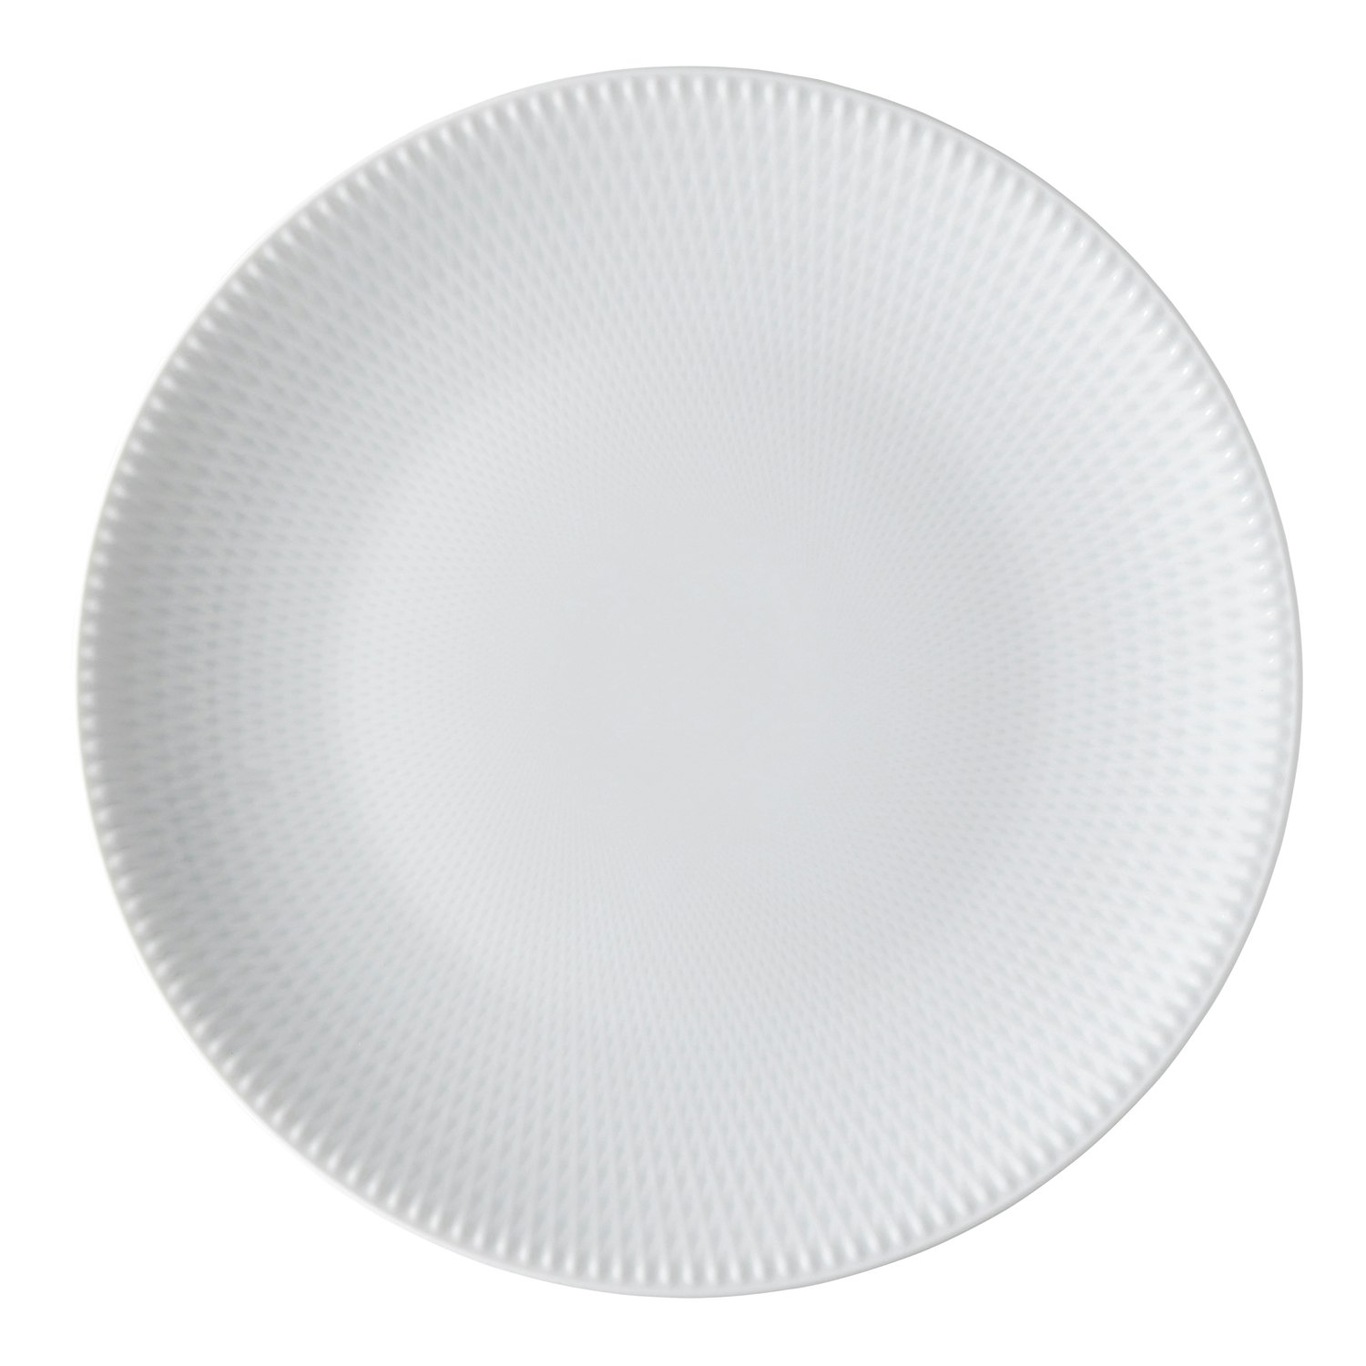 Blend Plate Crossbred, 25 cm